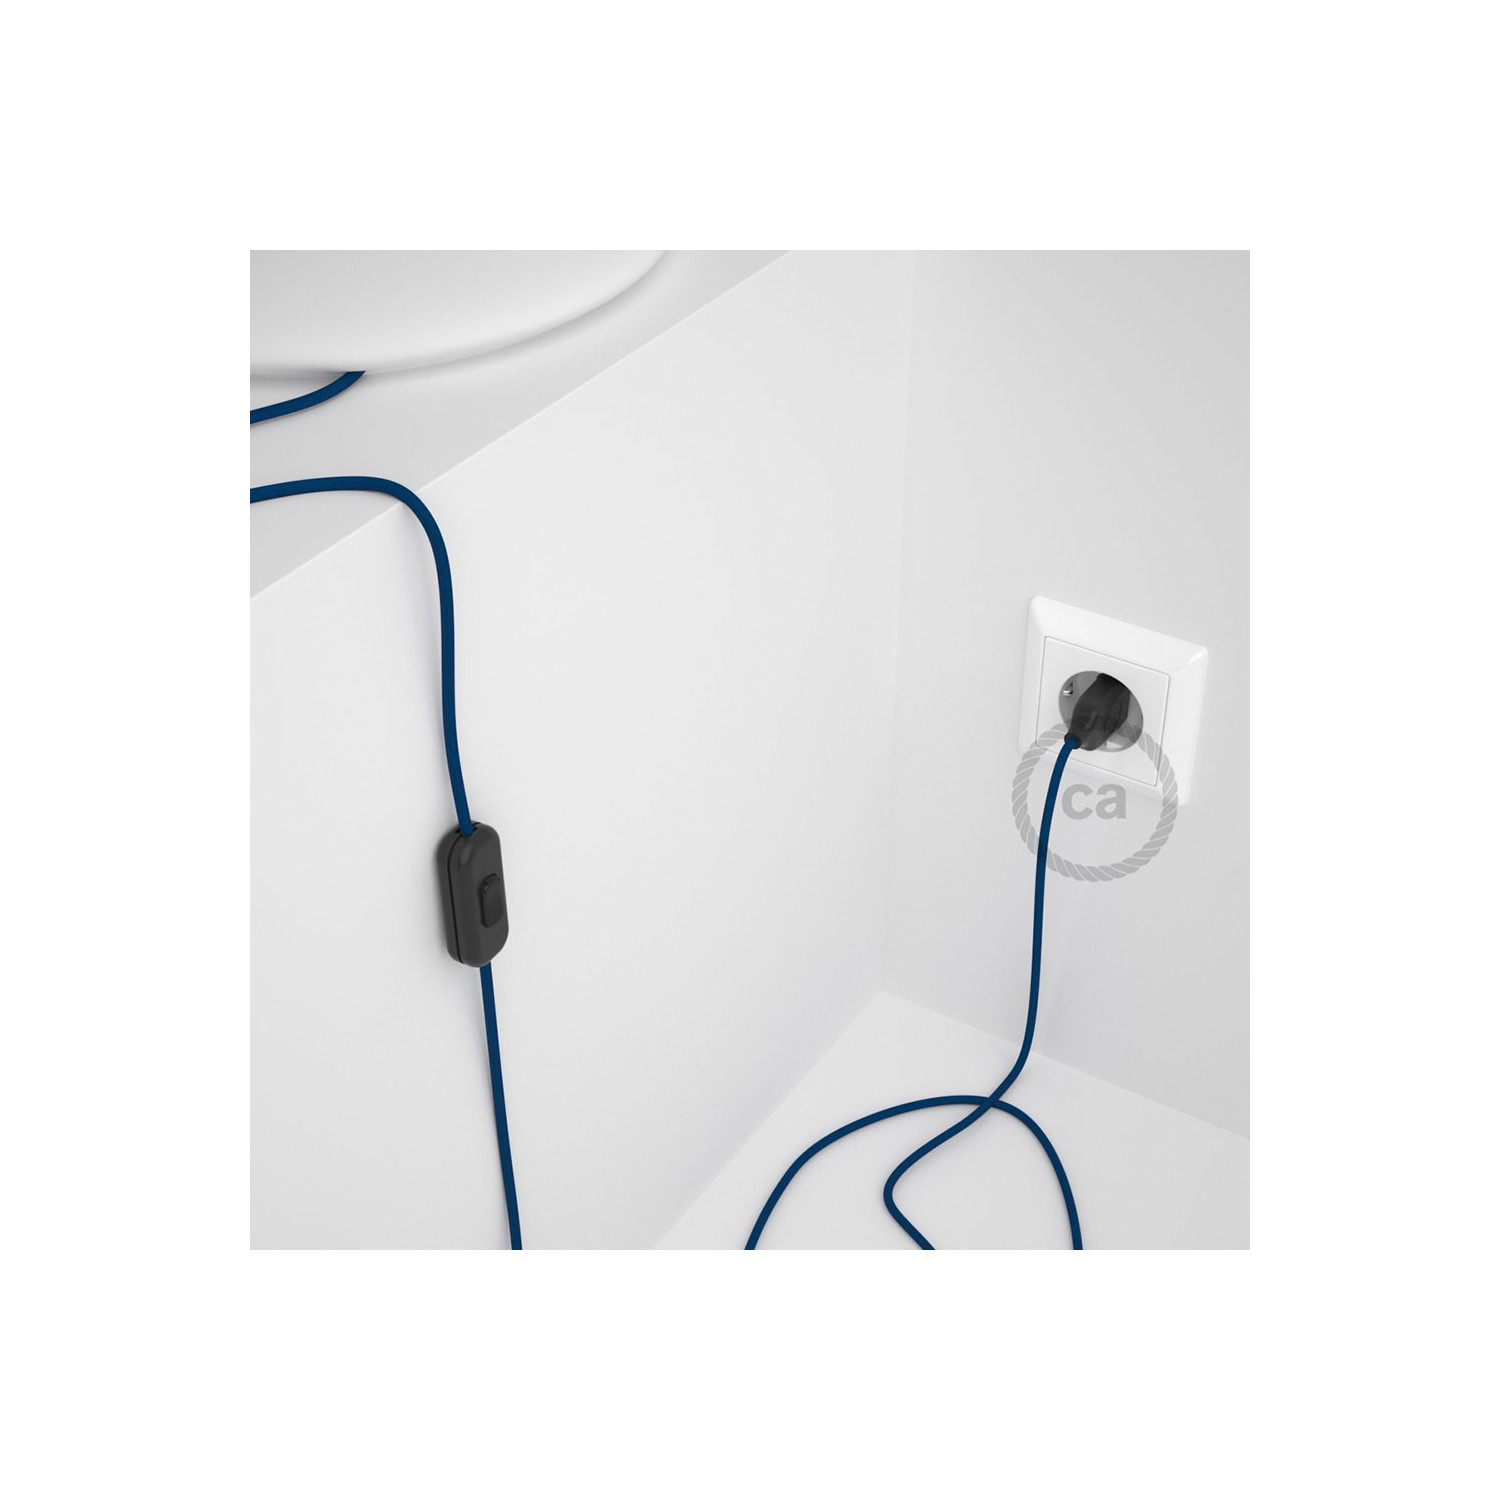 Cordon pour lampe, câble RM12 Effet Soie Bleu 1,80 m. Choisissez la couleur de la fiche et de l'interrupteur!